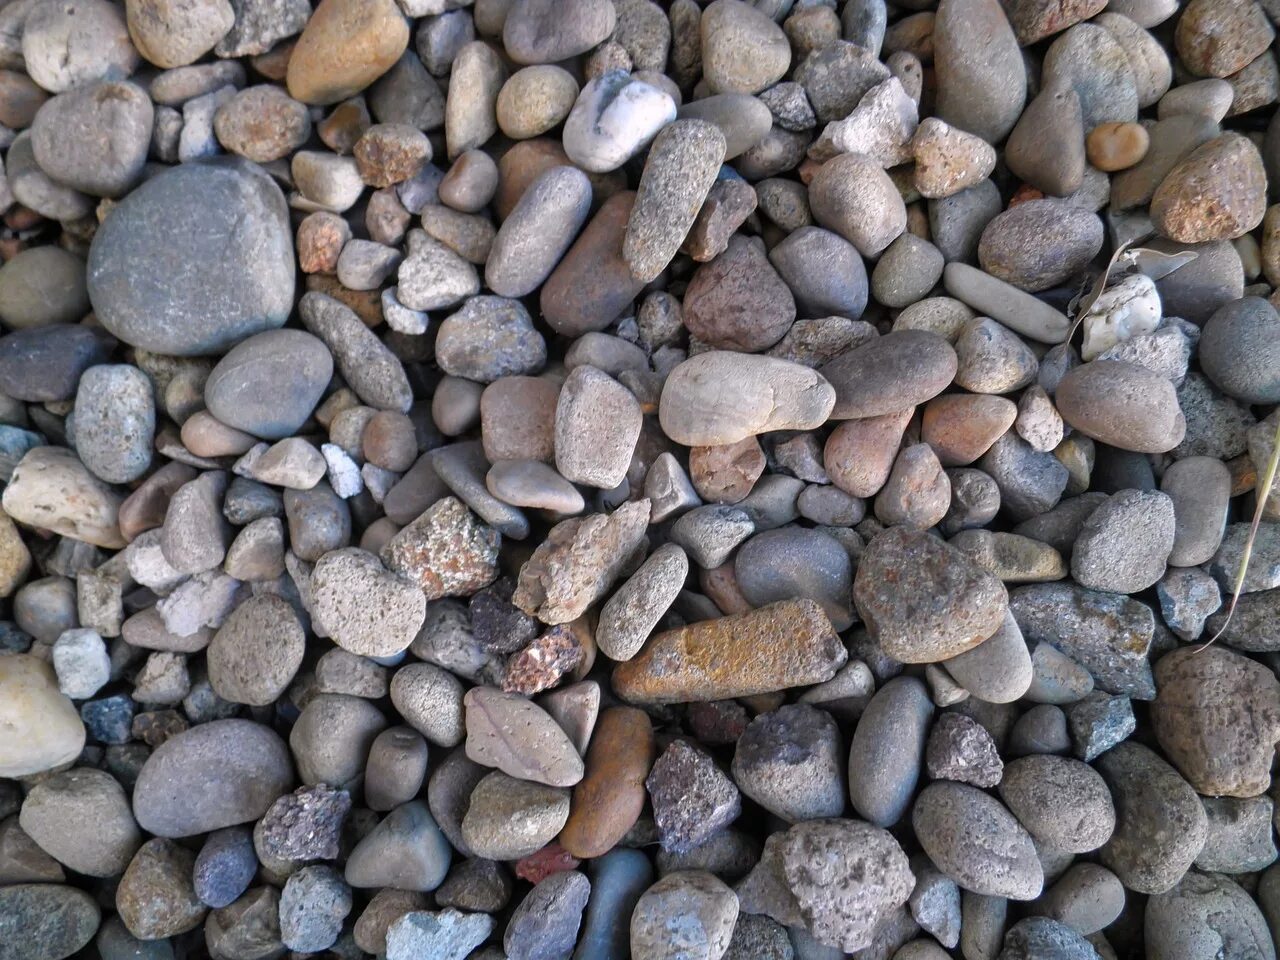 Ground stone. Камешки на земле. Камушки в грунте. Камешки для грунта. Грунт с камнями.